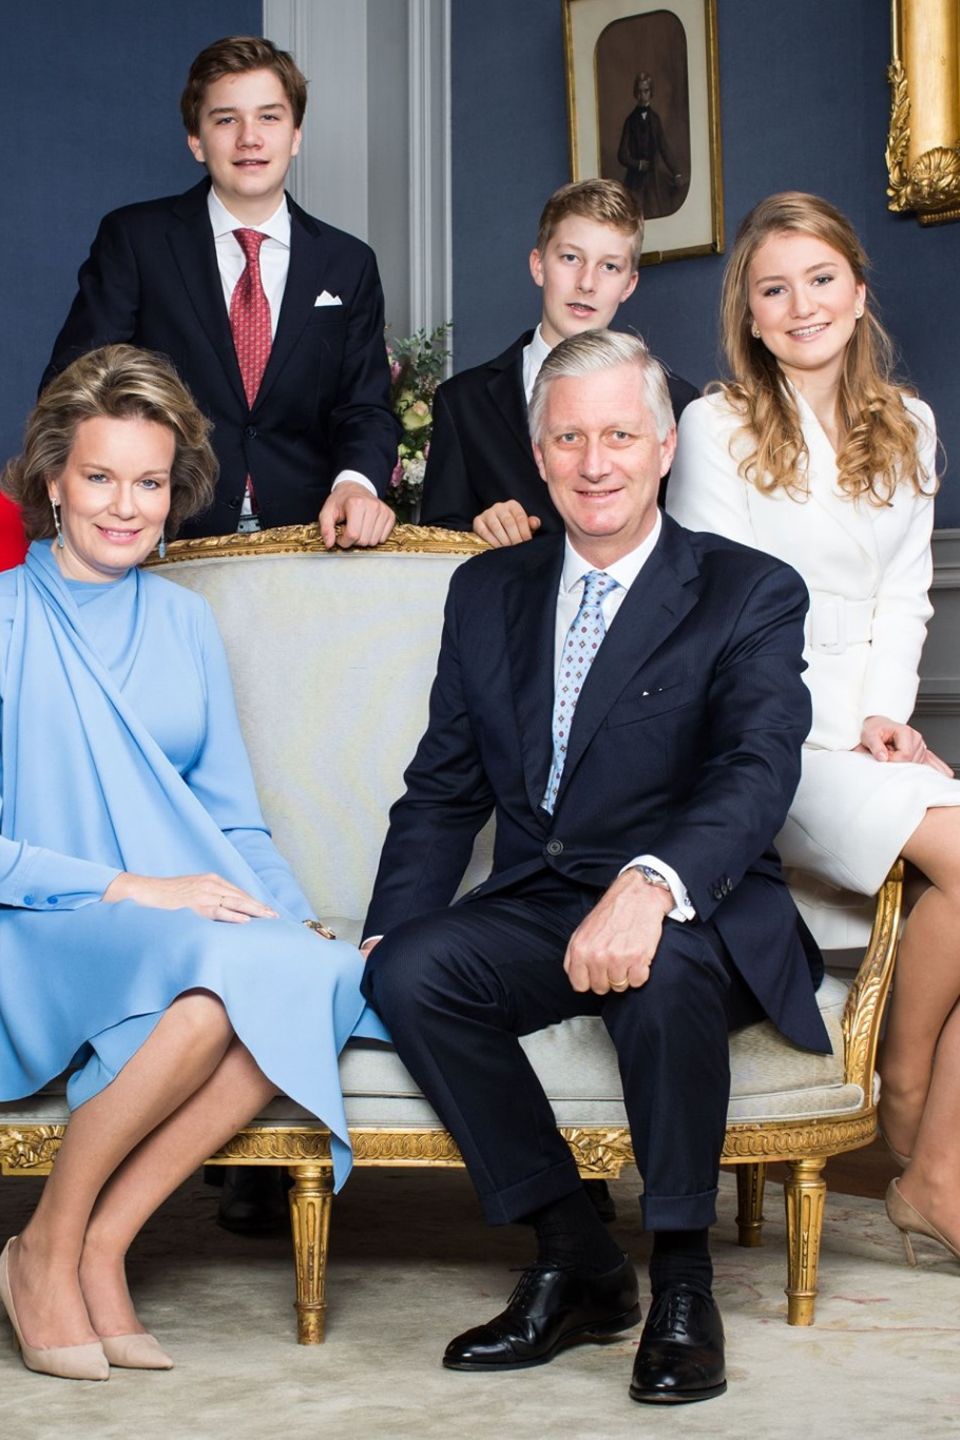 Das belgische Königspaar zeigt sich auf diesem offiziellen Foto mit seinen Kindern Prinzessin Eléonore, Prinz Emmanuel, Prinz Gabriel und Prinzessin Elisabeth. 